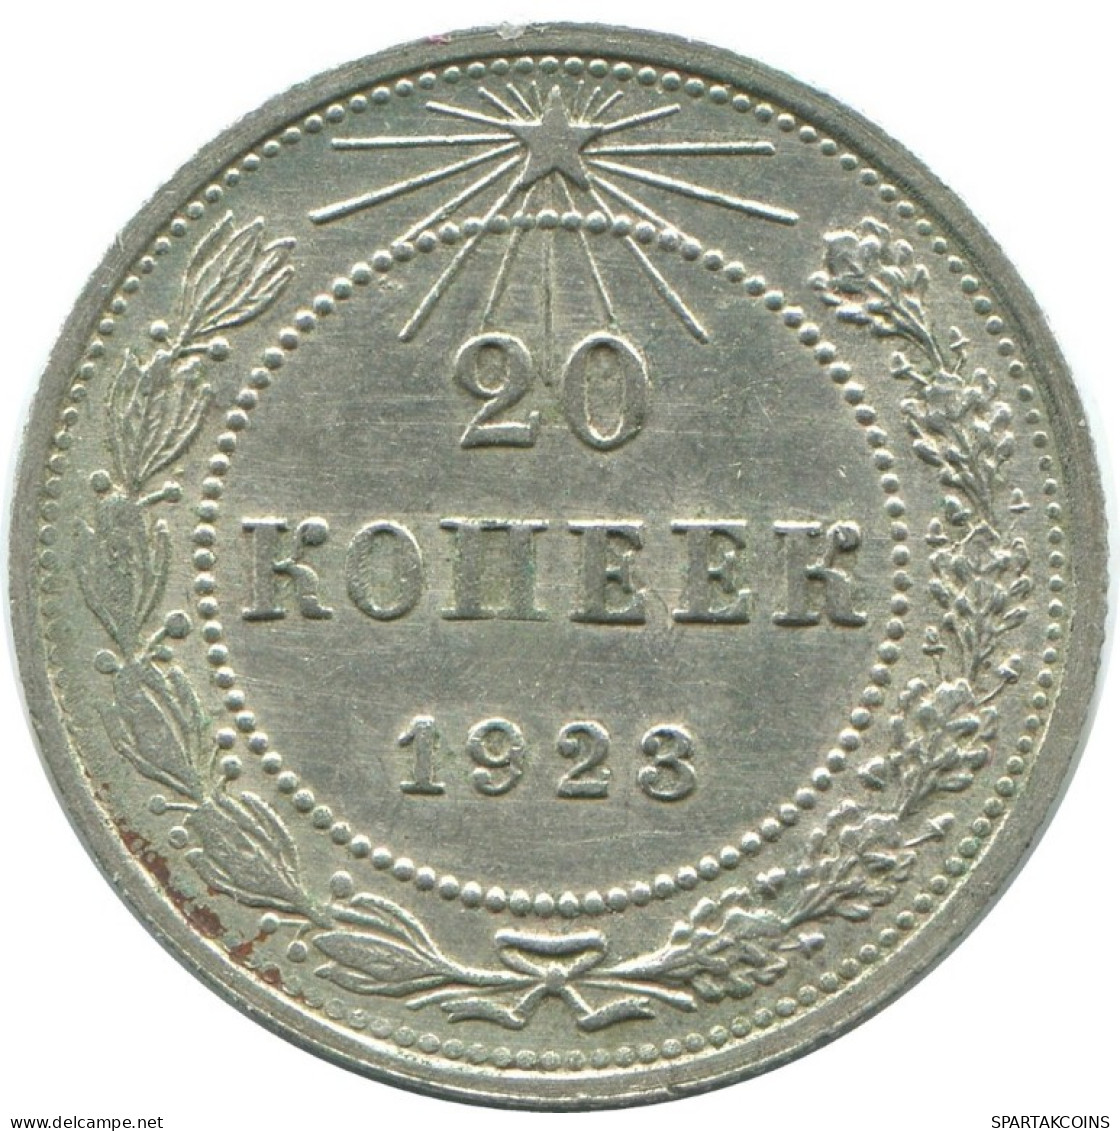 20 KOPEKS 1923 RUSSLAND RUSSIA RSFSR SILBER Münze HIGH GRADE #AF679.D.A - Russia